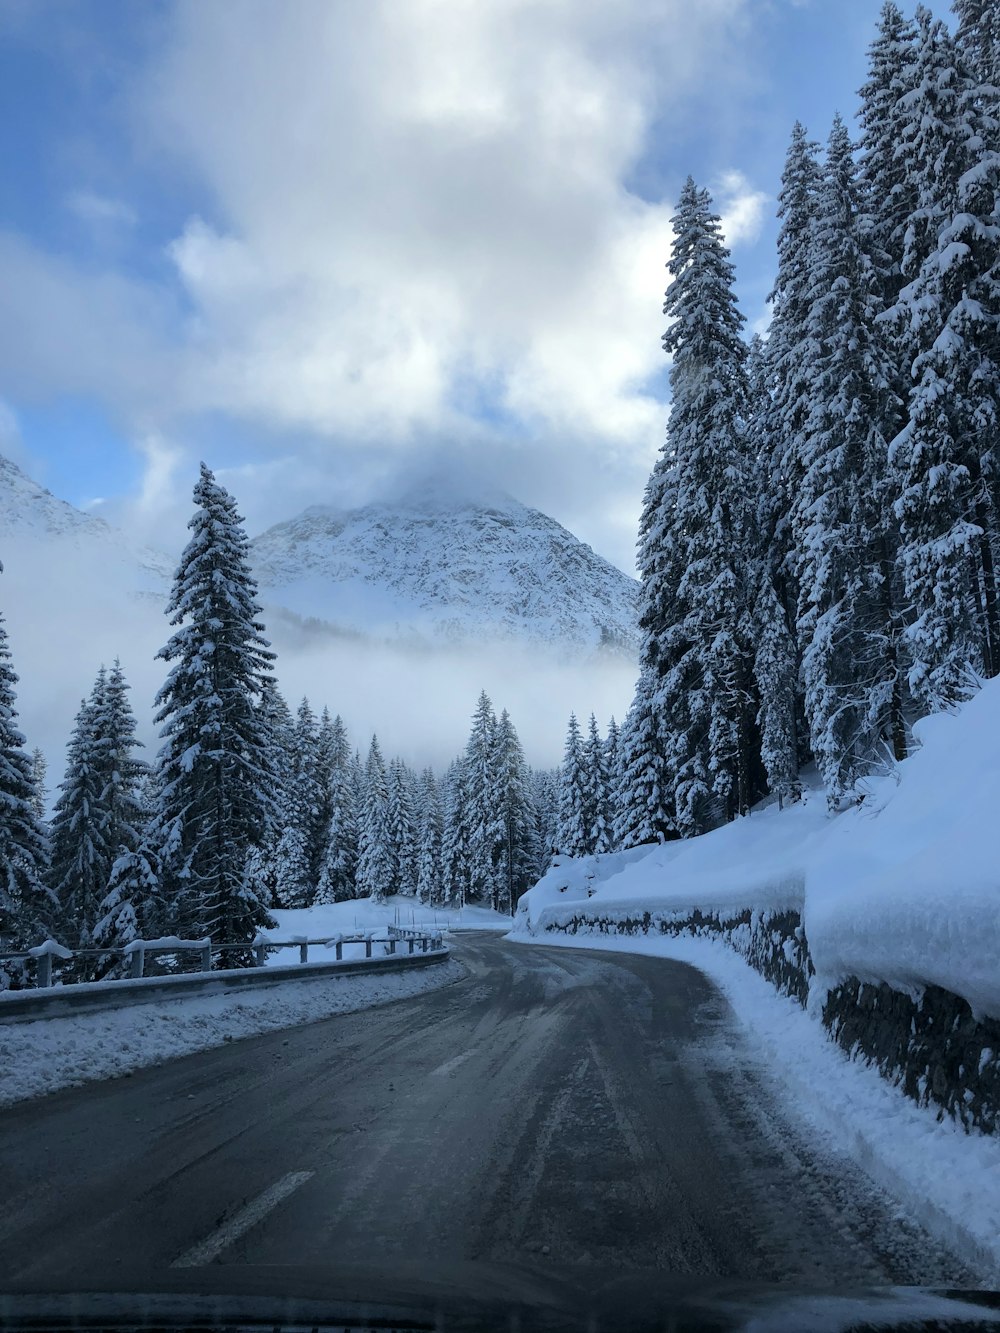 Carretera asfaltada junto a árboles nevados y montaña